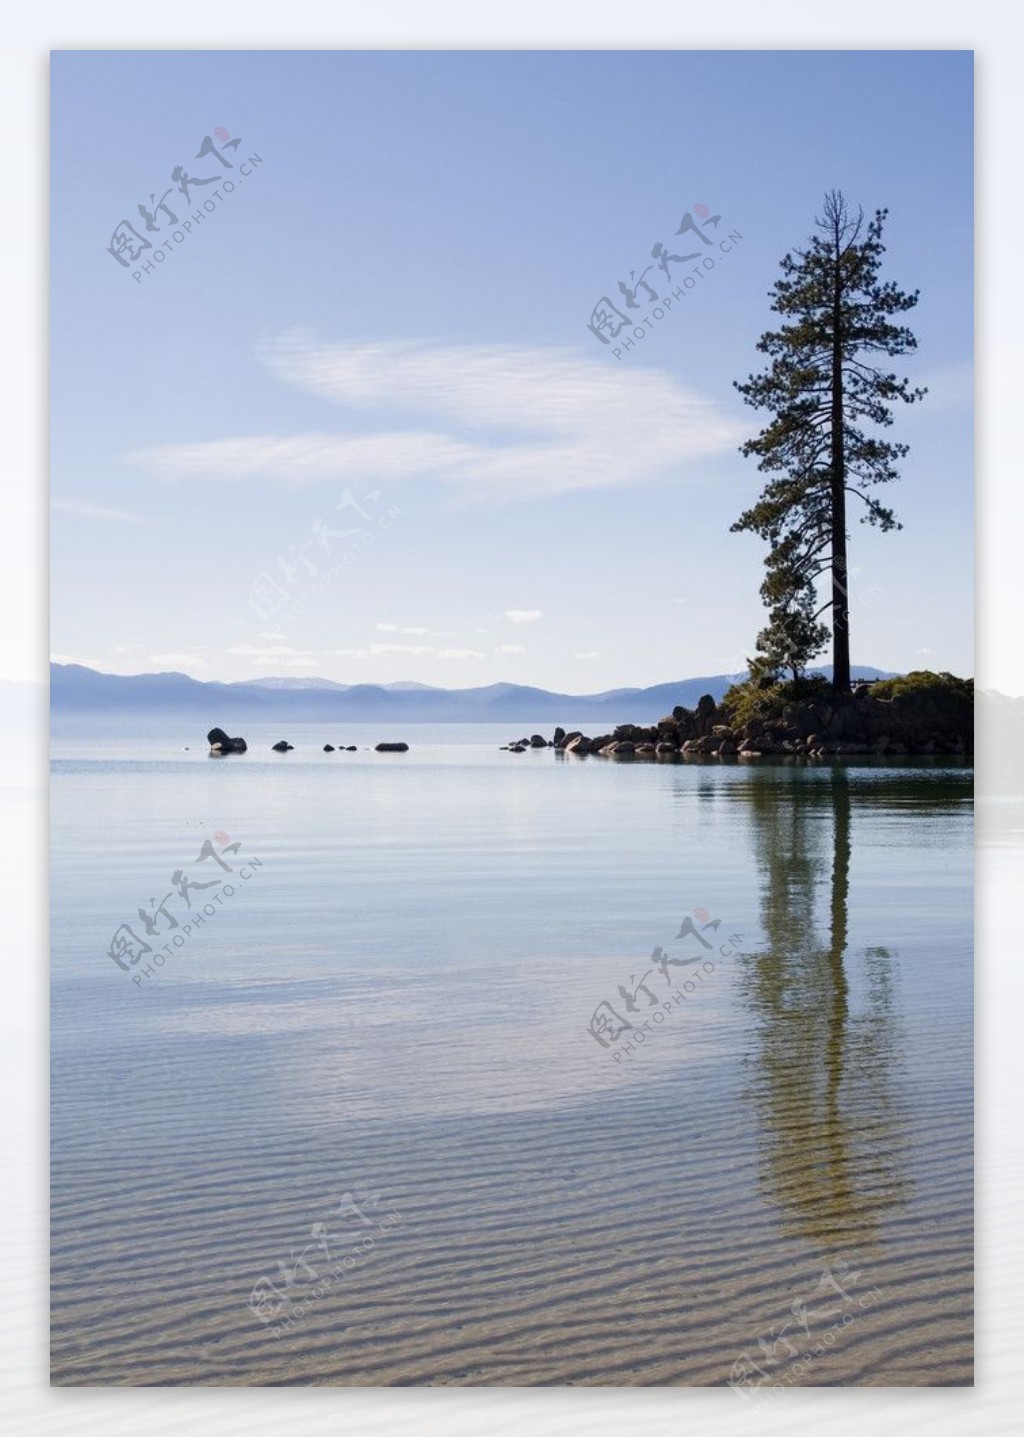 湖泊风光图片